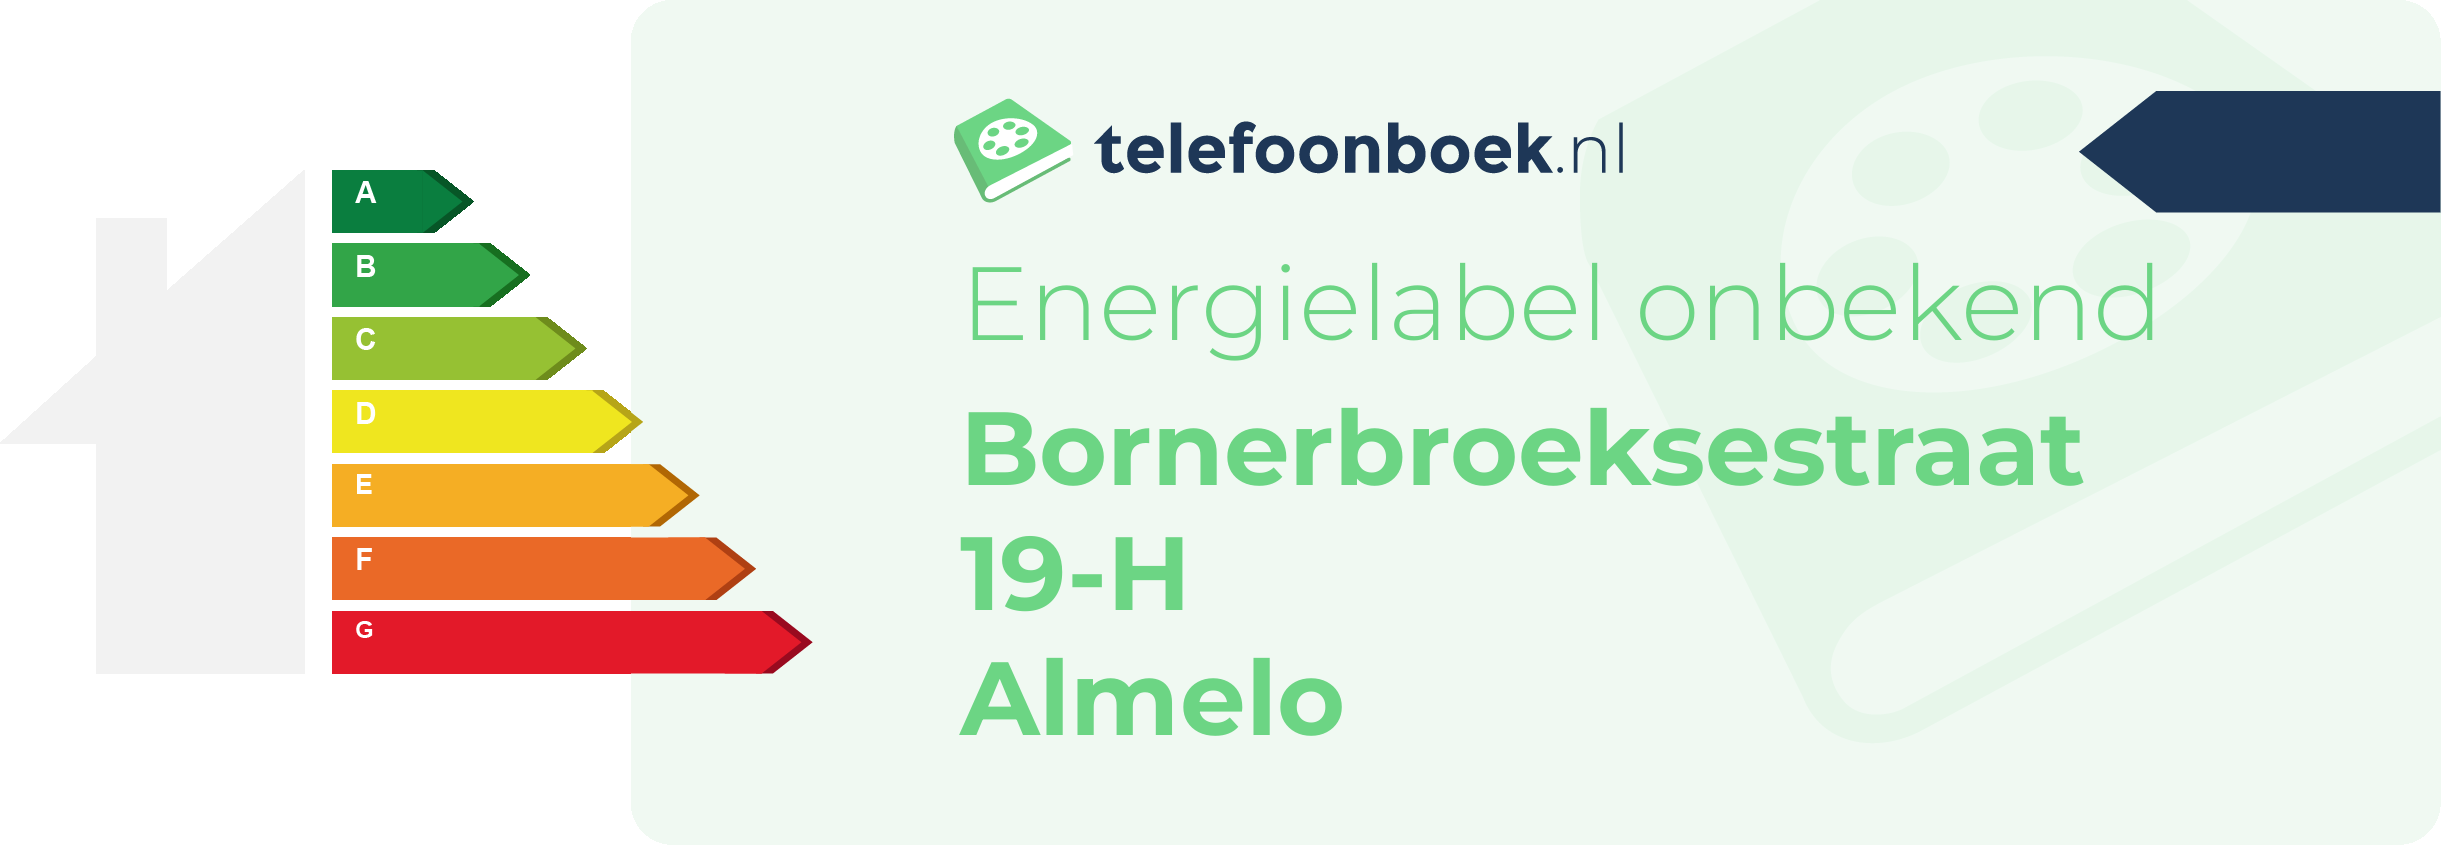 Energielabel Bornerbroeksestraat 19-H Almelo